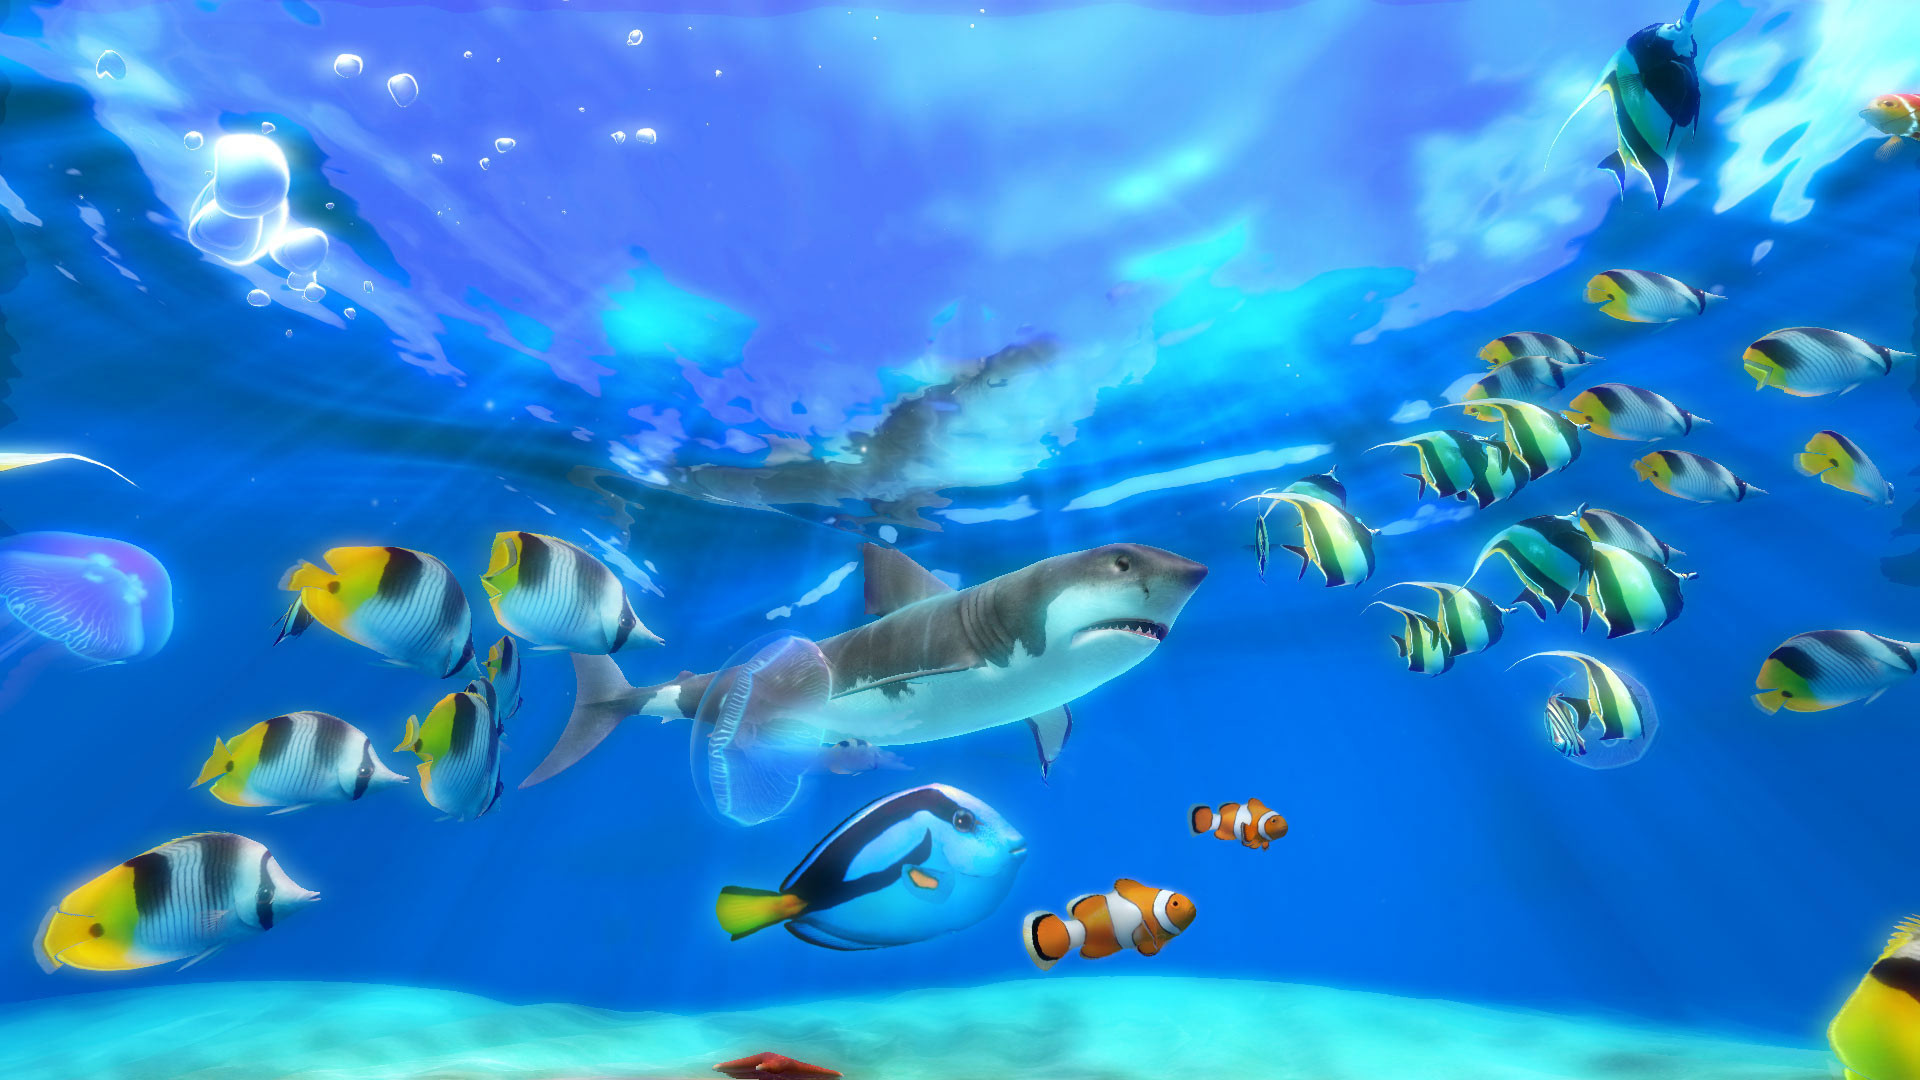 Live Wallpaper Windows 10 Fish - Live Aquarium Screensaver Windows 10 - HD Wallpaper 